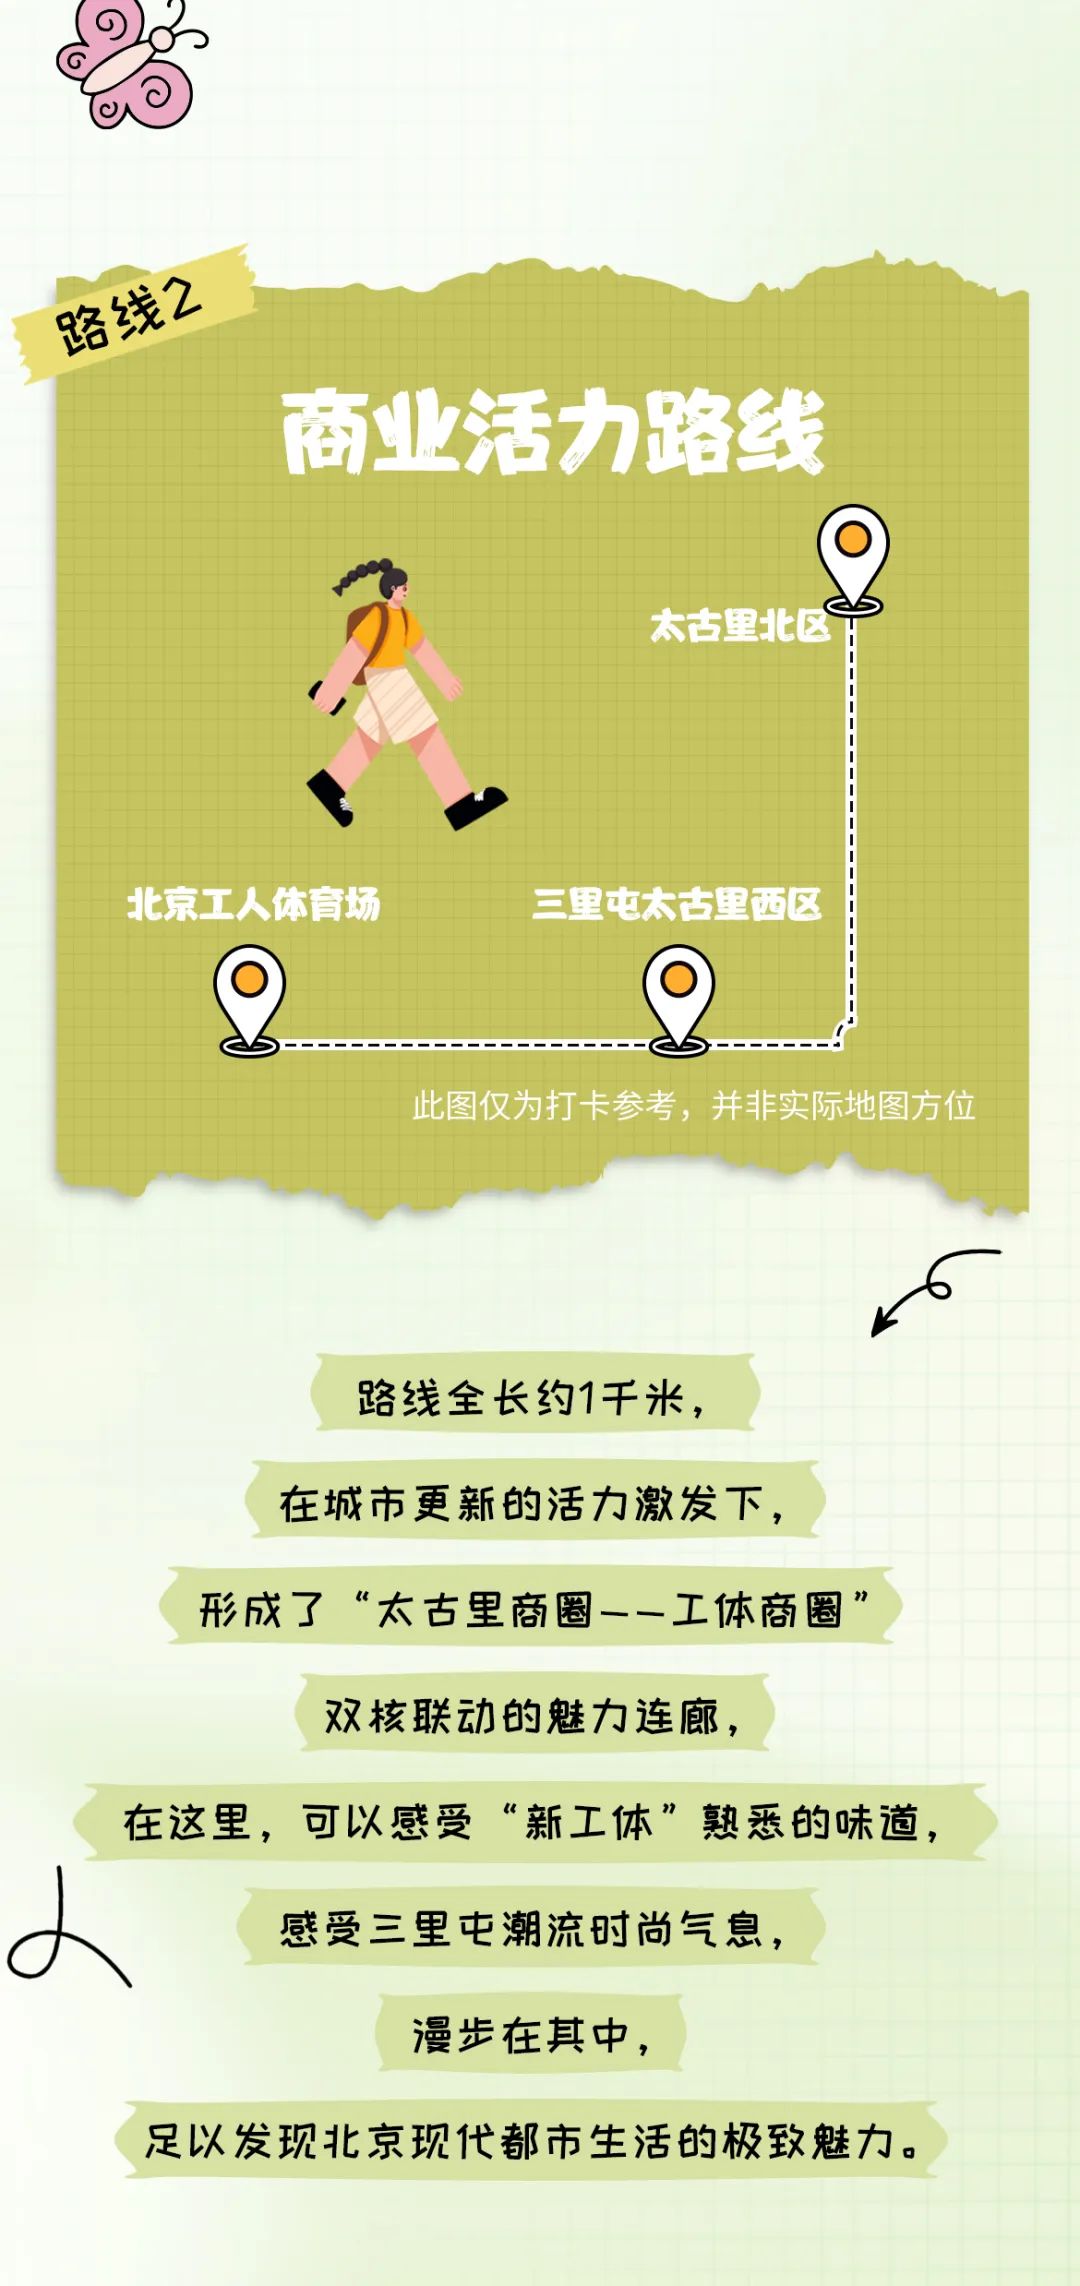 来源：北京规划自然资源微信公众号 部分图片来源：北京朝阳、中赫工体微信公众号